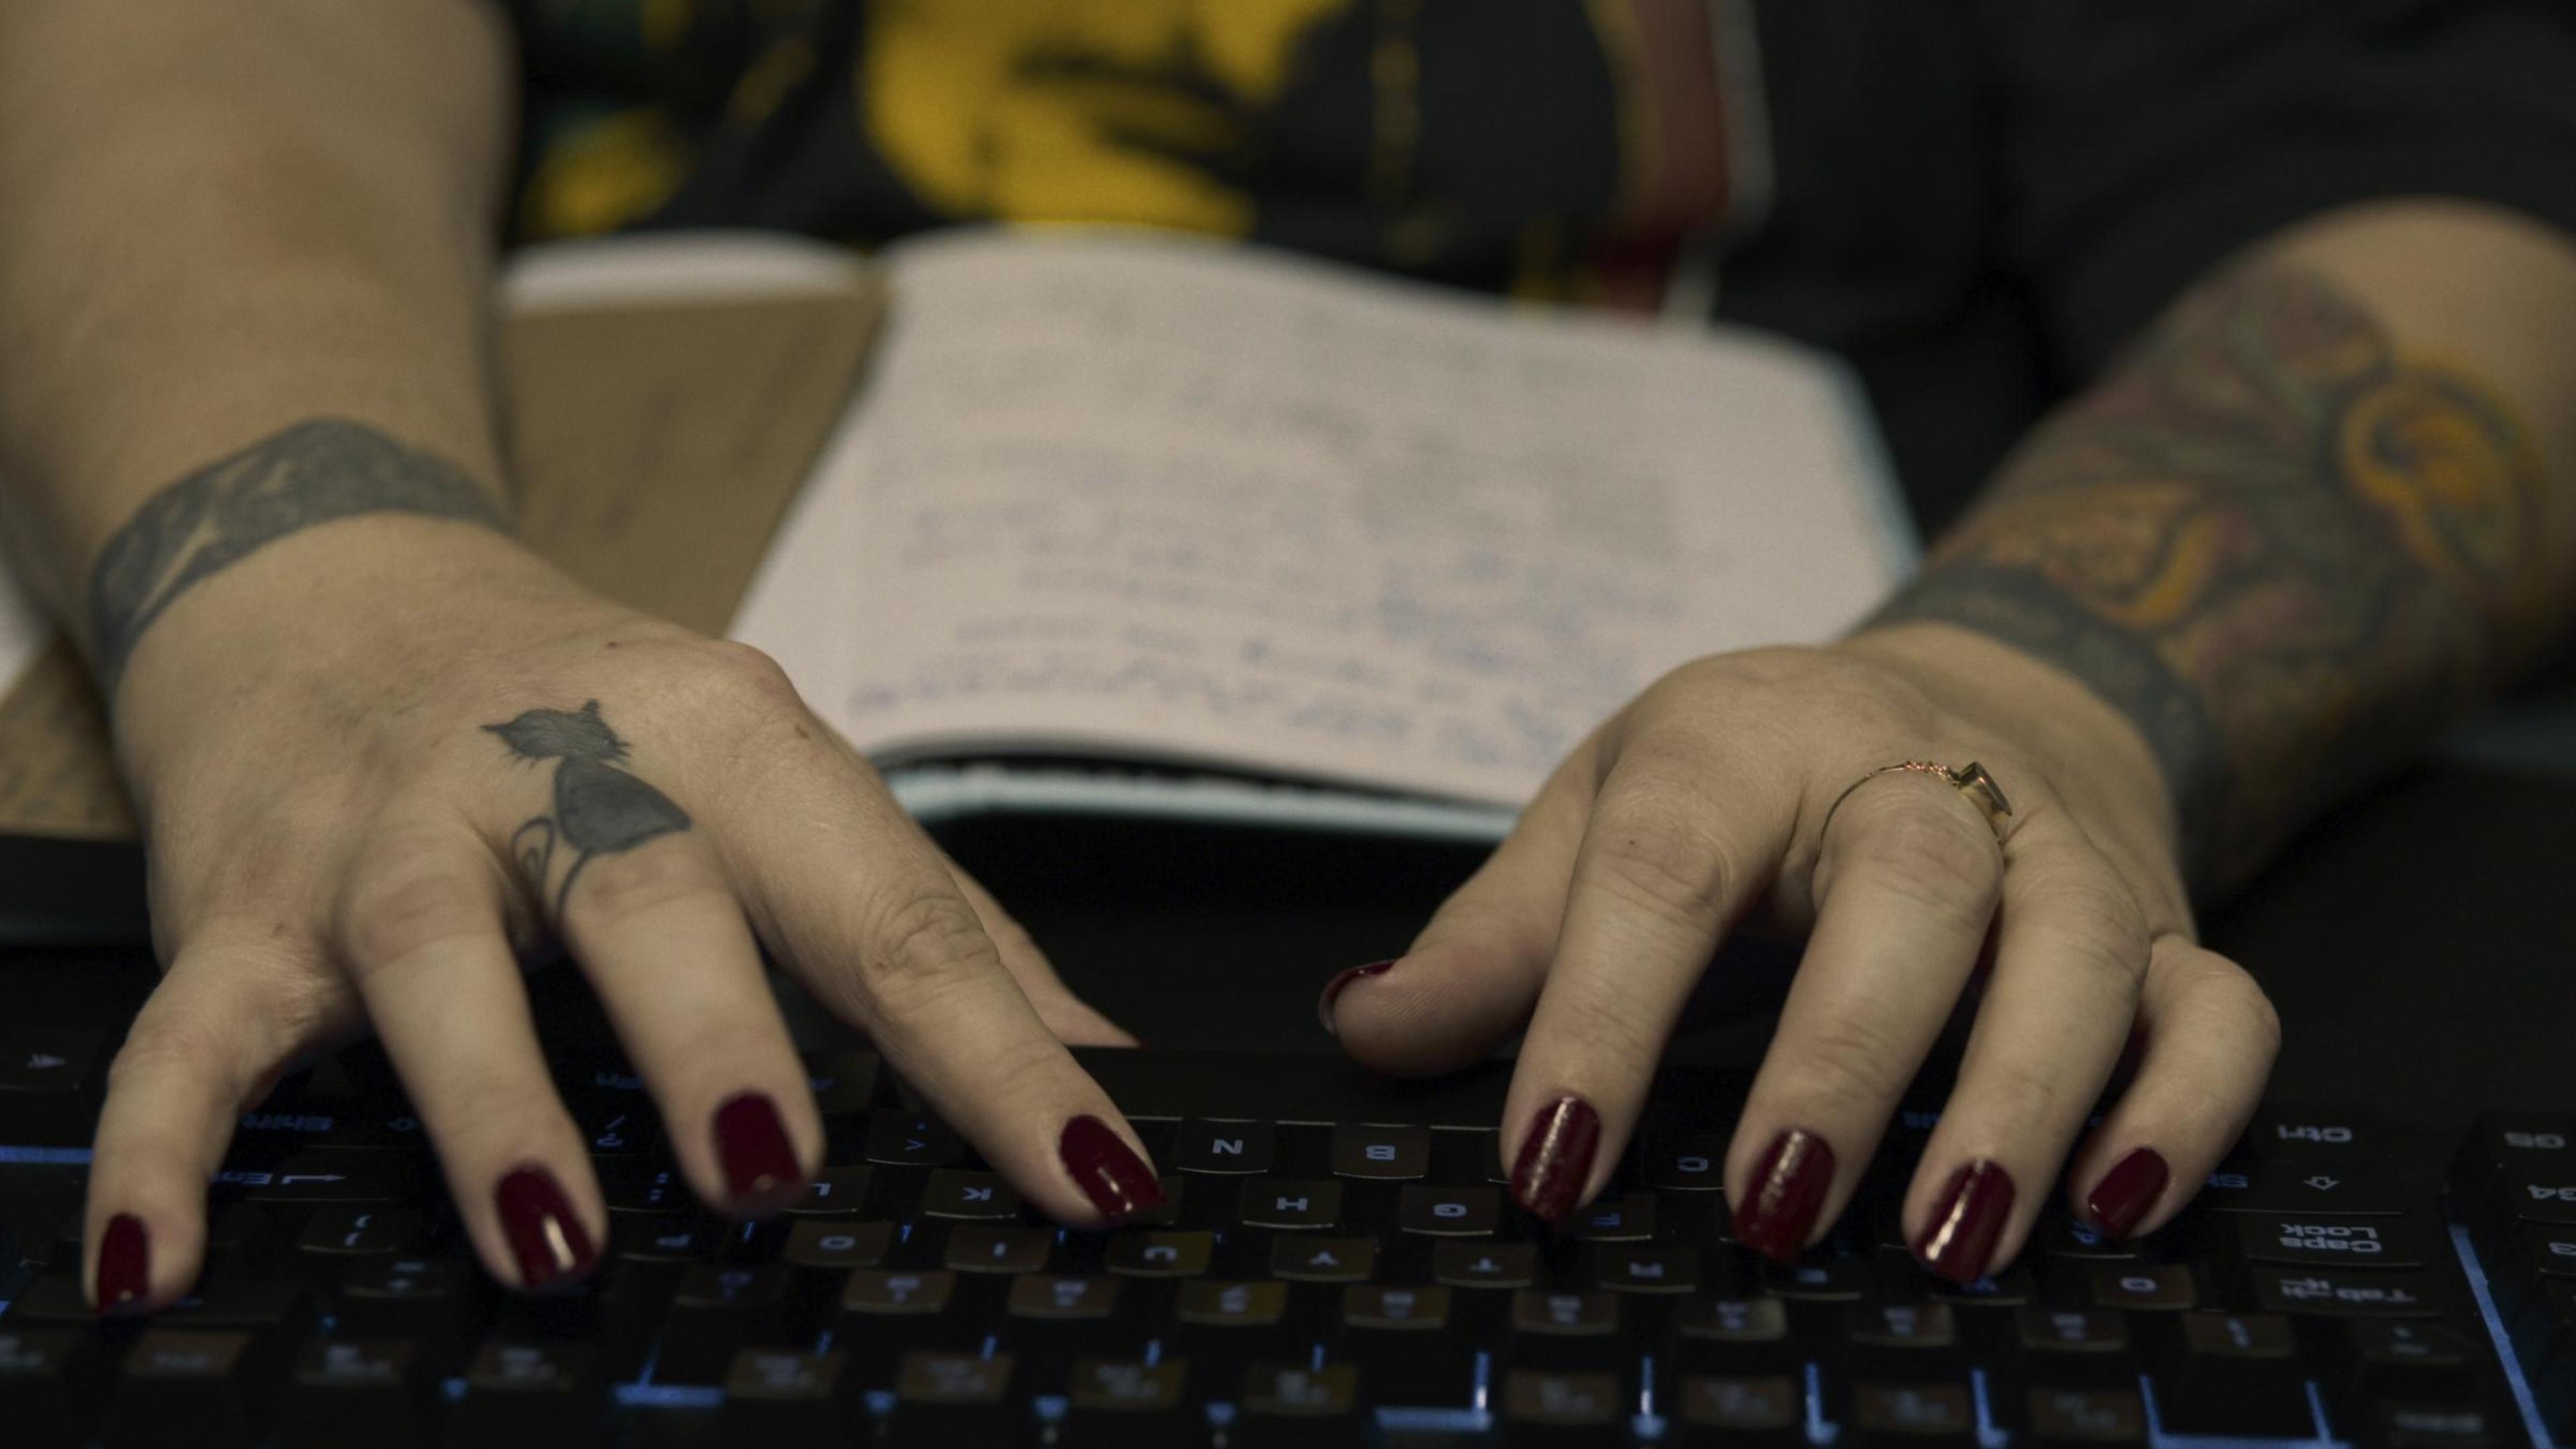 Zwei tätowierte Hände mit dunkel lackierten Fingernägeln tippen auf einer Computertastatur.